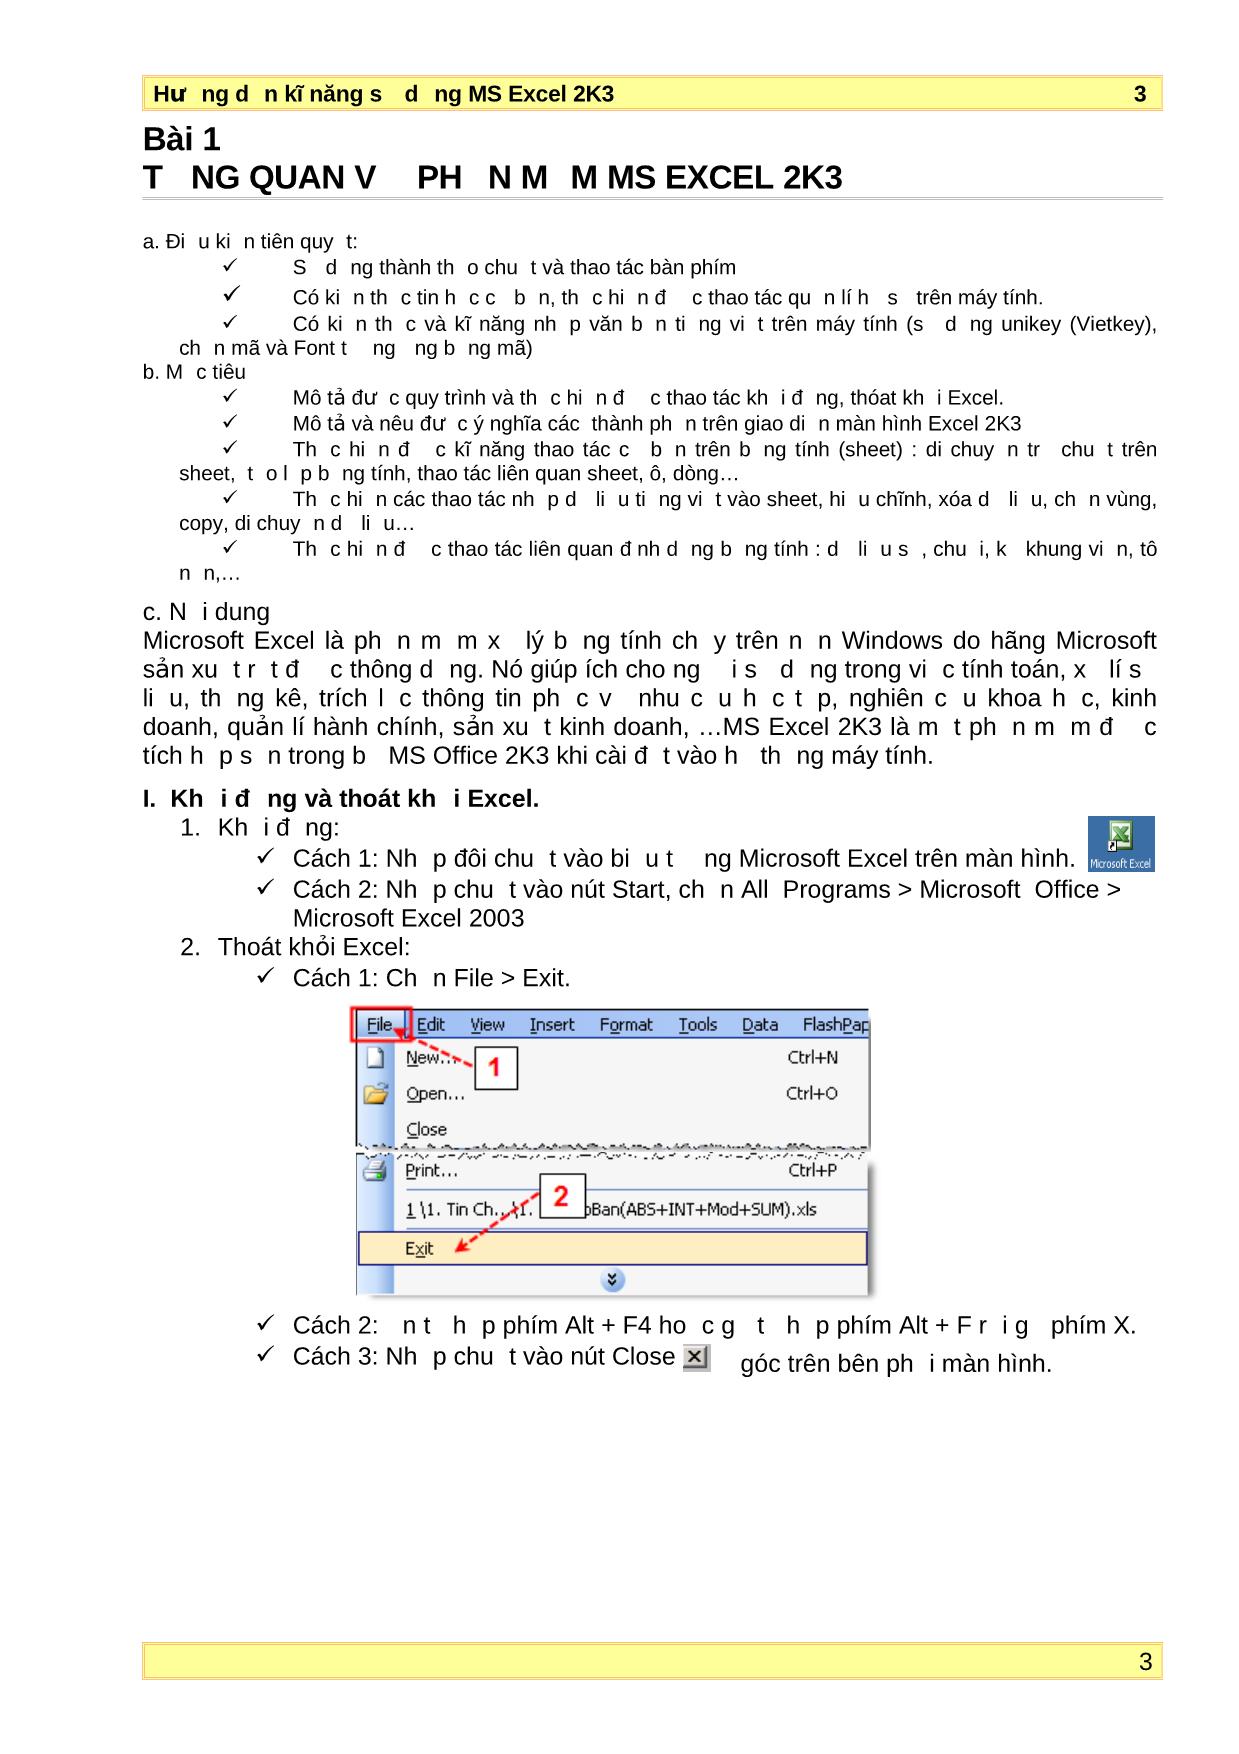 Bài giảng Hướng dẫn kĩ năng sử dụng Microsoft Excel 2003 trang 3